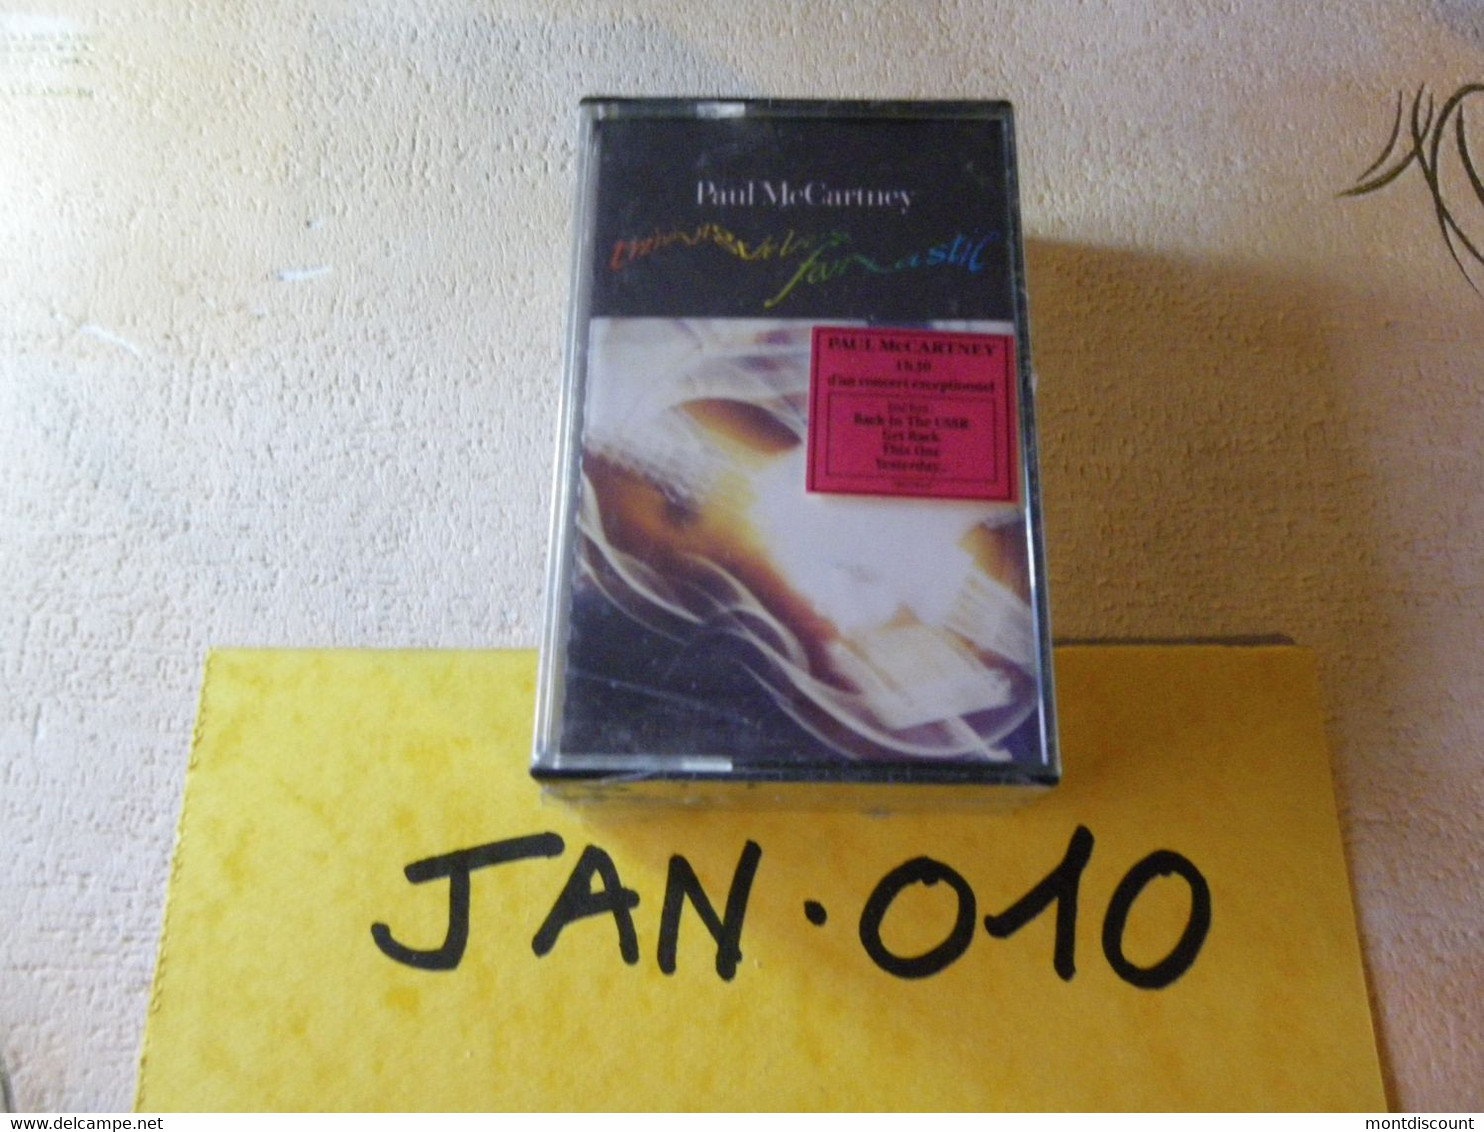 PAUL McCARTNEY K7 AUDIO EMBALLE D'ORIGINE JAMAIS SERVIE... VOIR PHOTO... (JAN 010) - Cassettes Audio